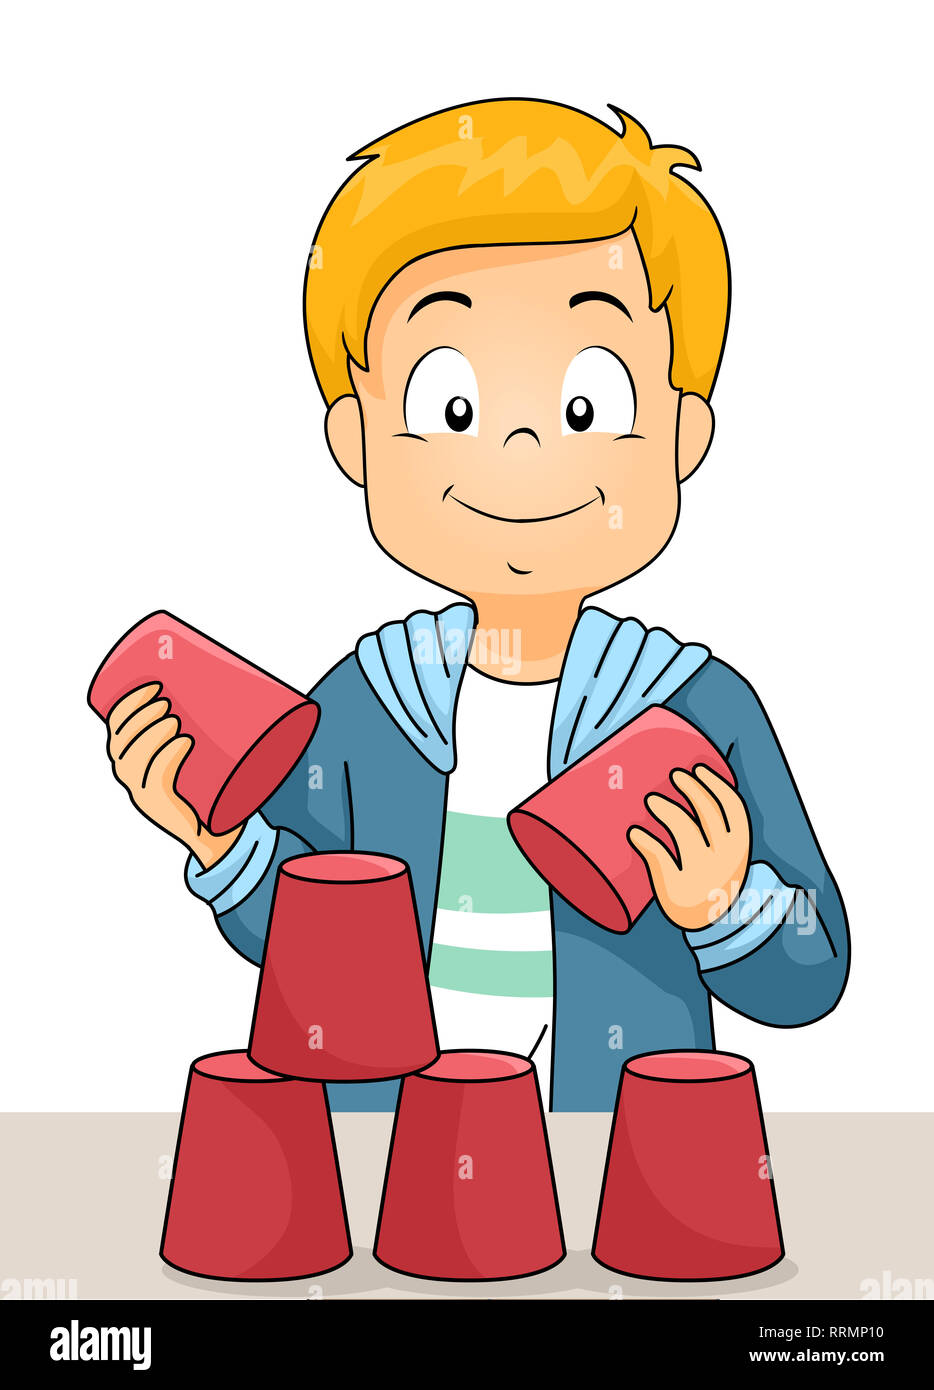 Abbildung: ein Kind Junge spielt mit Pappbechern für eine Pyramide Spiel an einem Team Building Workshop Stockfoto